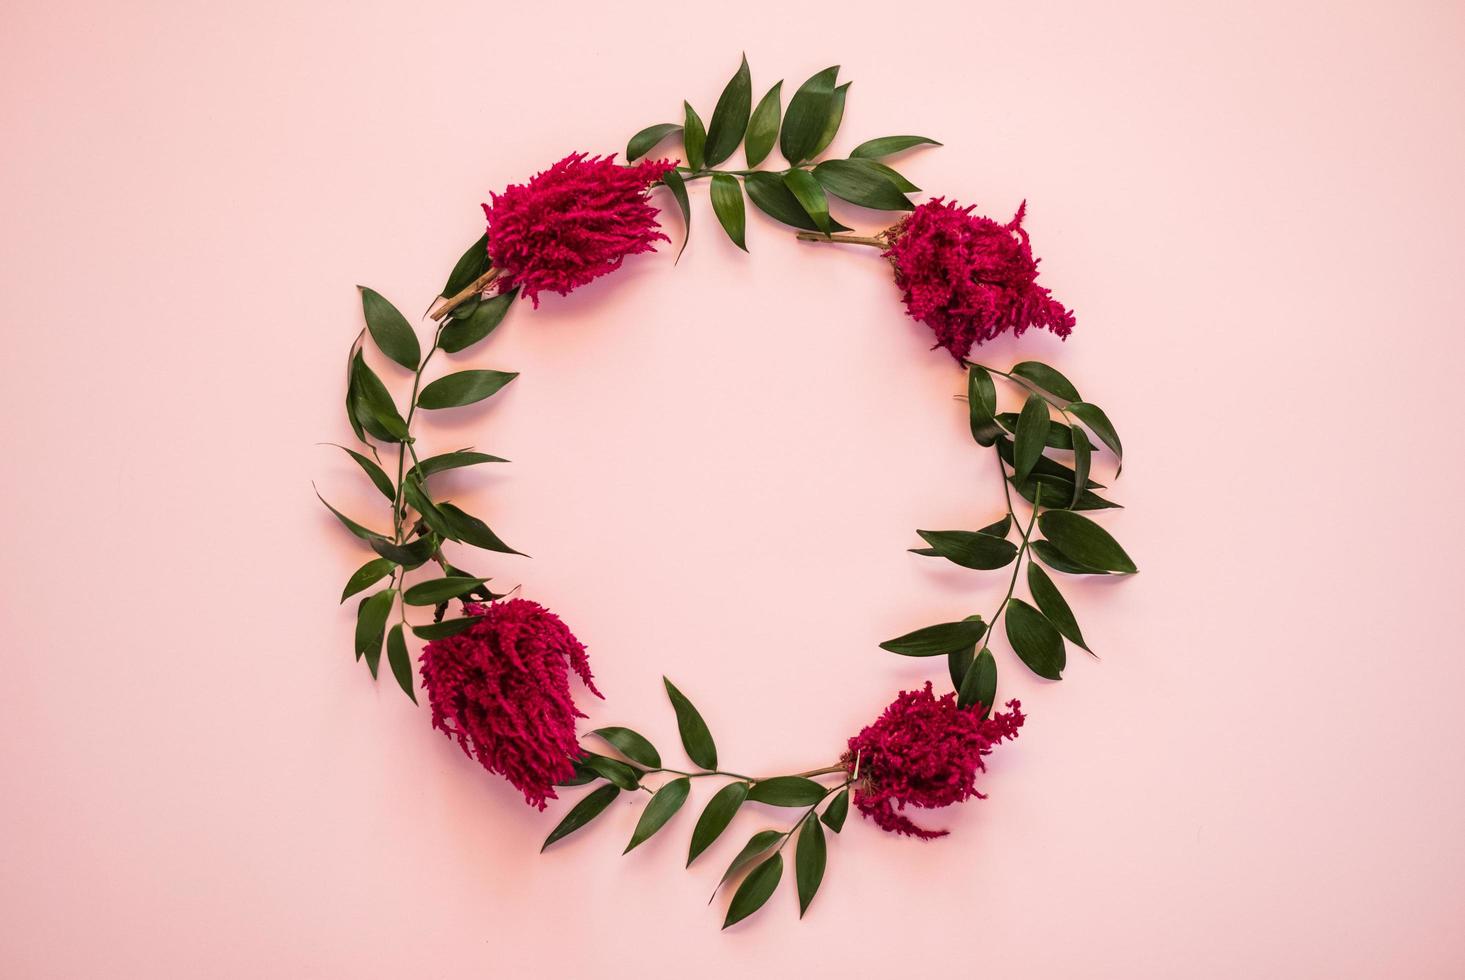 arco de flores frescas sobre um fundo rosa - imagem foto